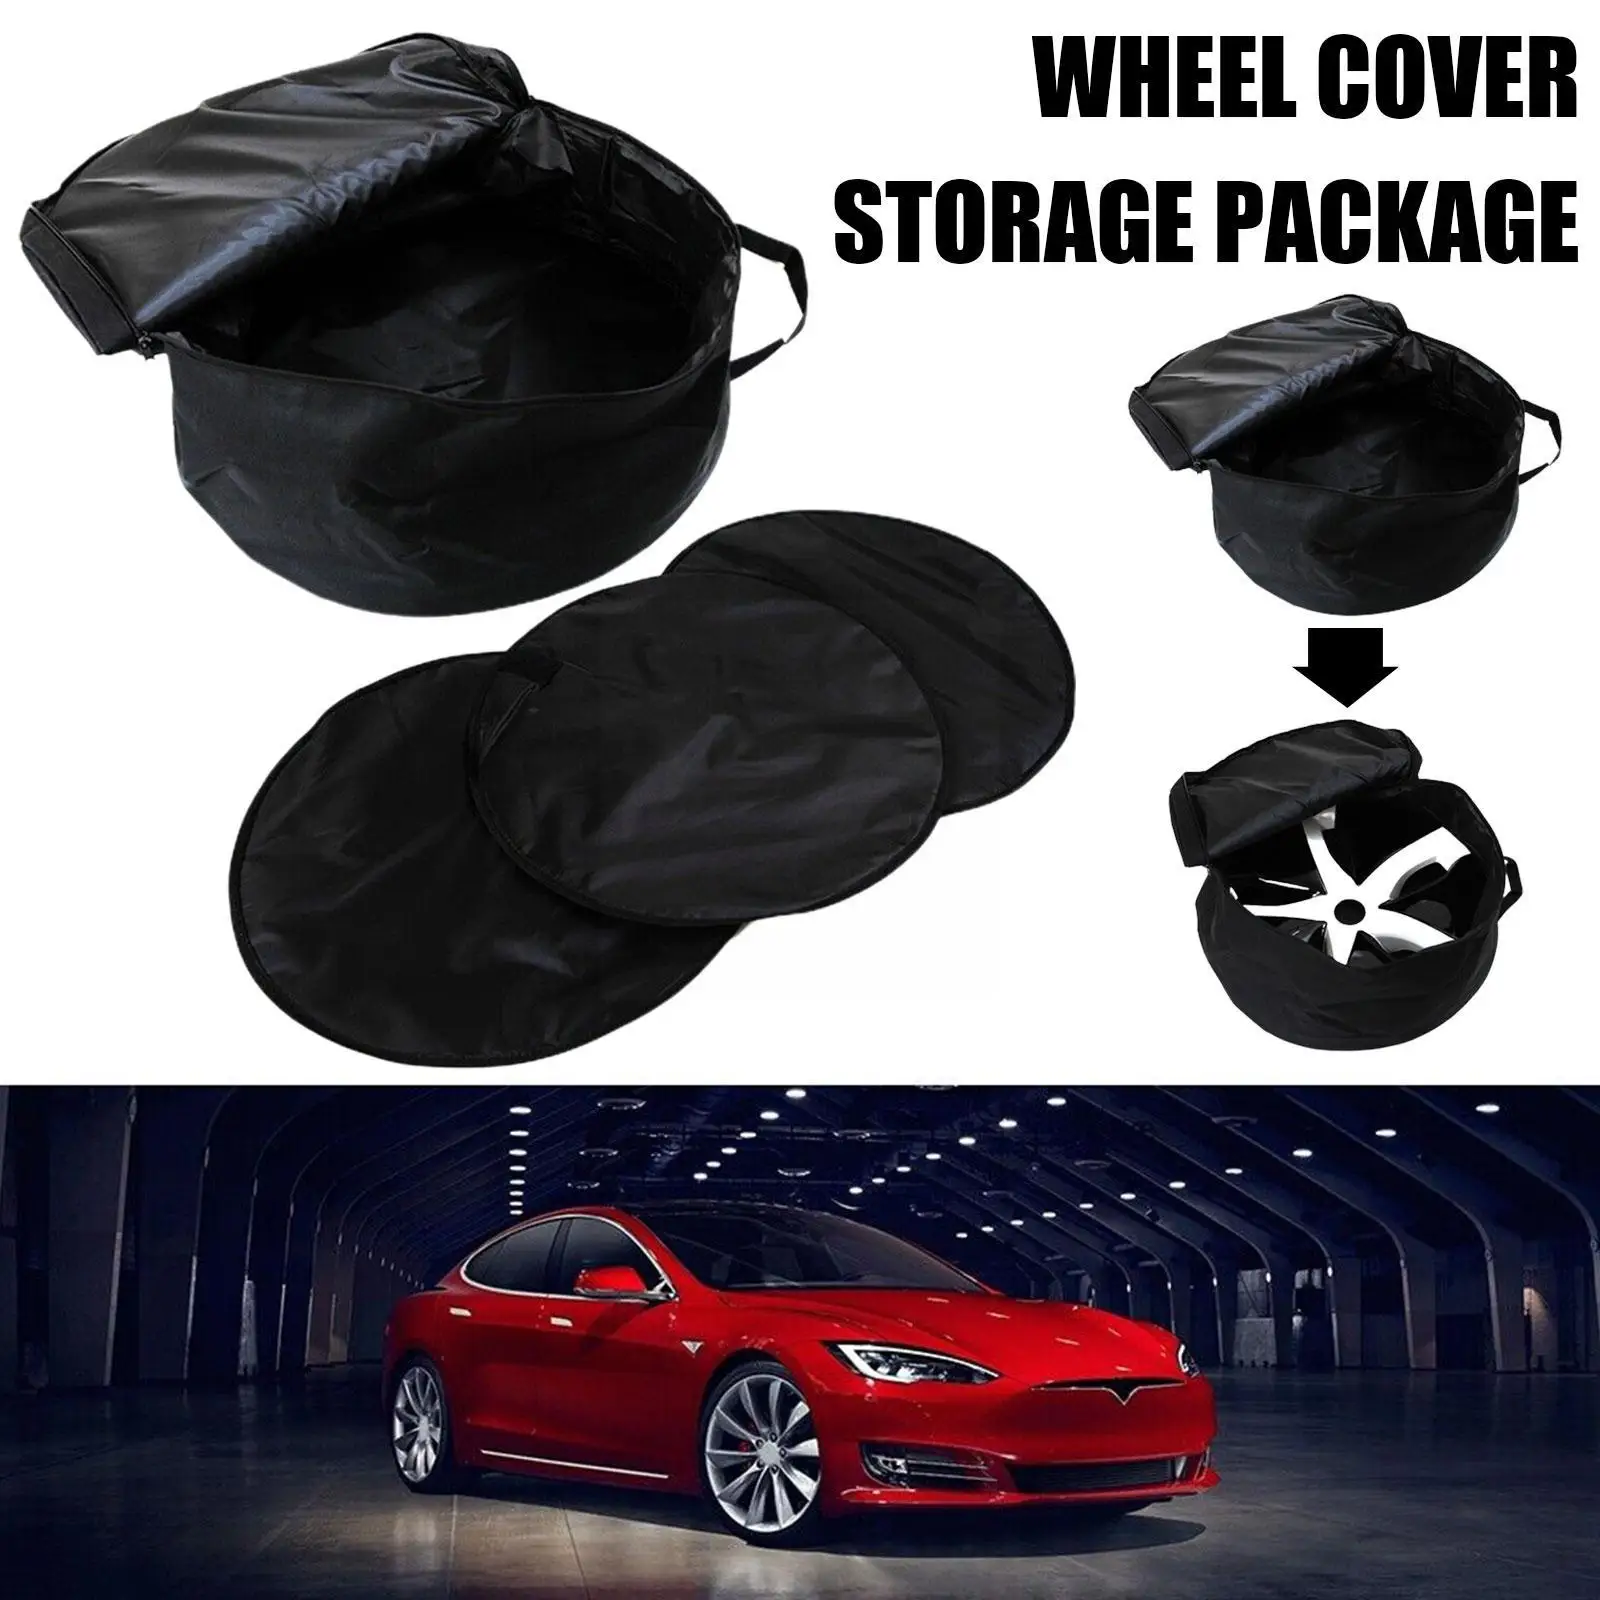 Сумка для хранения рулевой рубки автомобиля Применима Для Tesla Model3, сумка для хранения Крышки ступицы, сумка для хранения модельной ступицы, аксессуары для модернизации S5I1 2